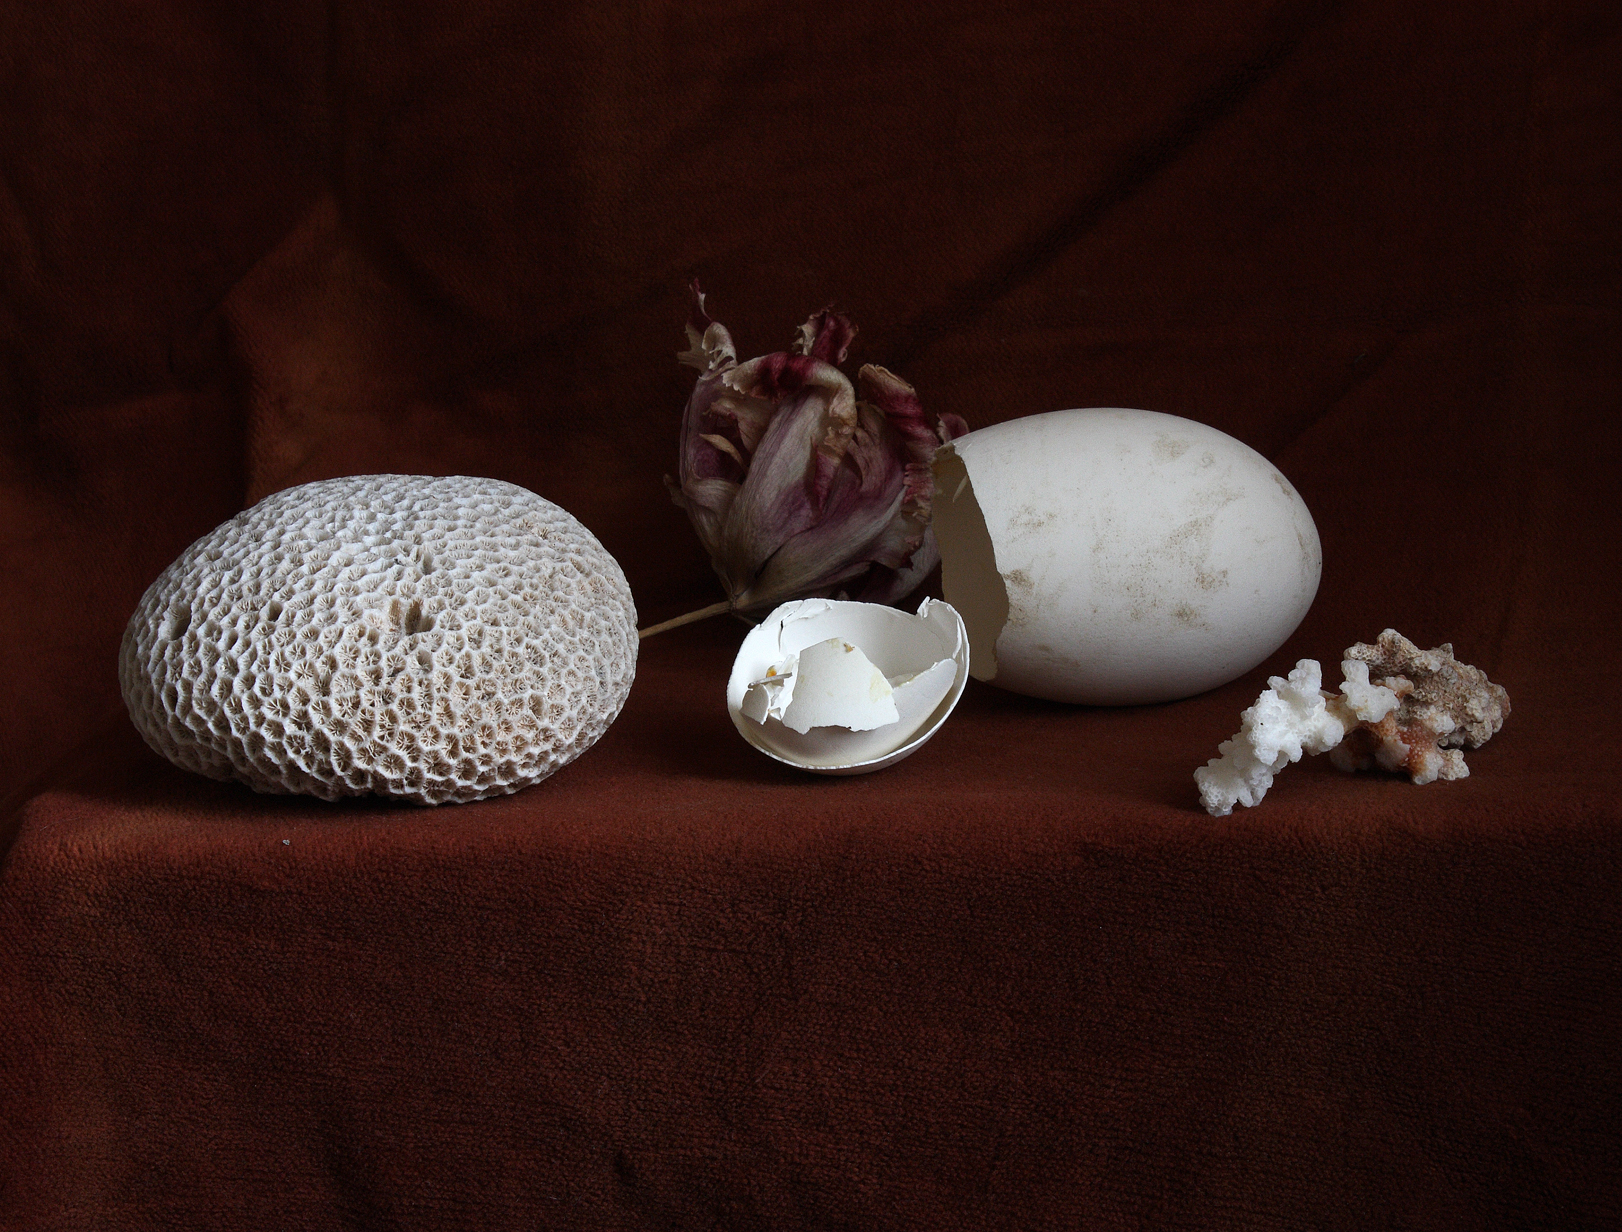 Still Life with a Broken Egg, Antwerp, 2013